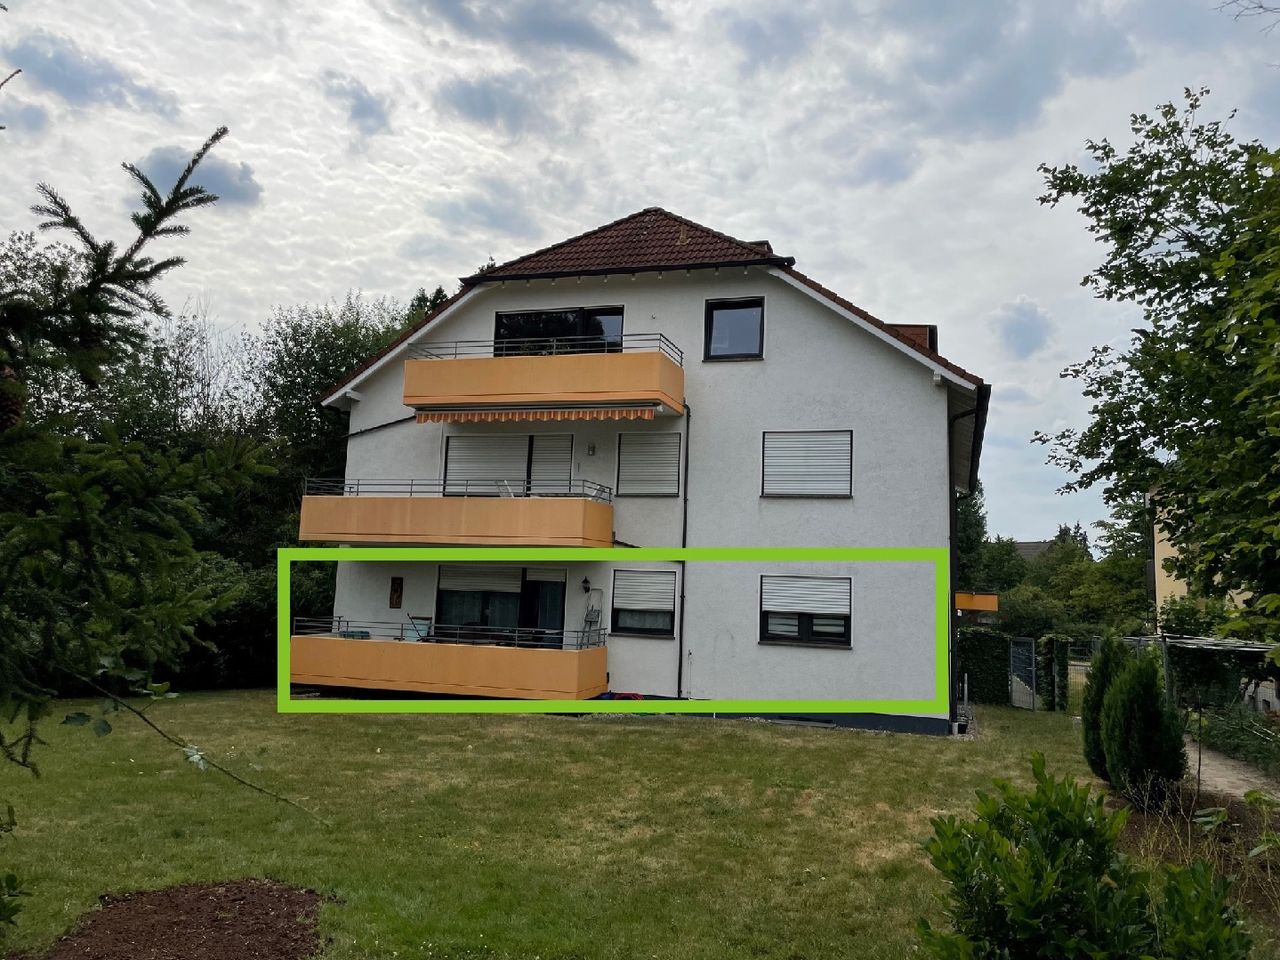 Eigentumswohnung mit Balkon in Bonn-Holzlar – Wohnen in idyllischer Lage